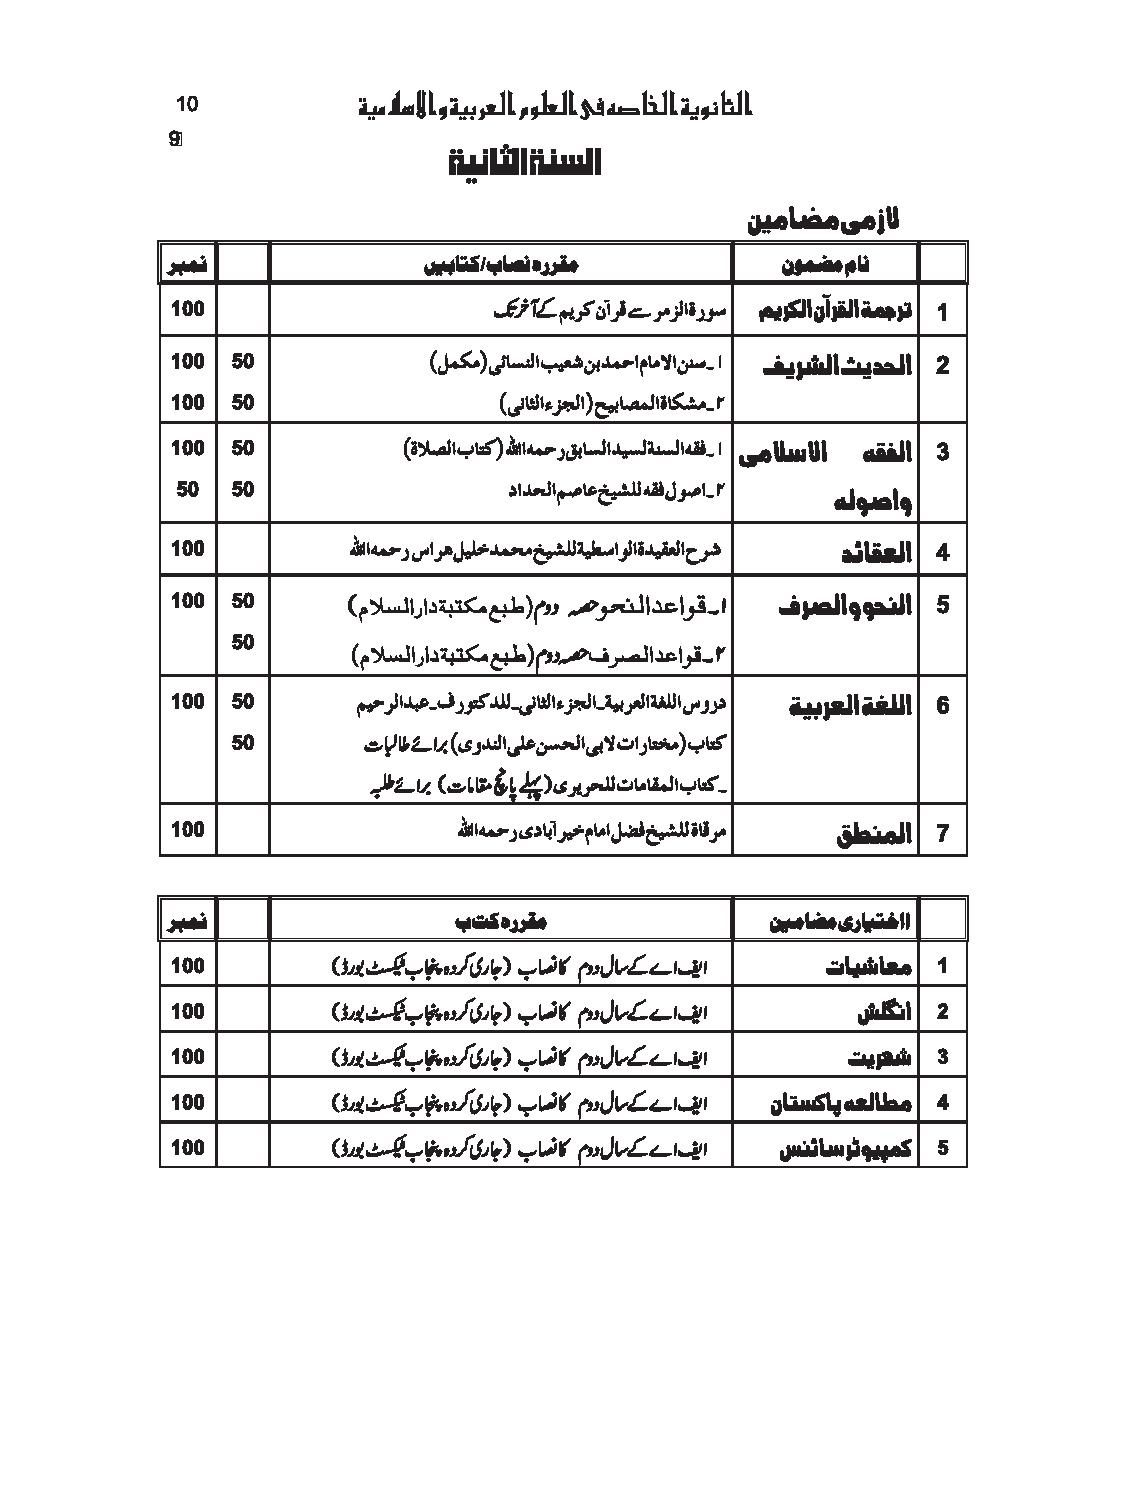 jadeed nisab-page-010